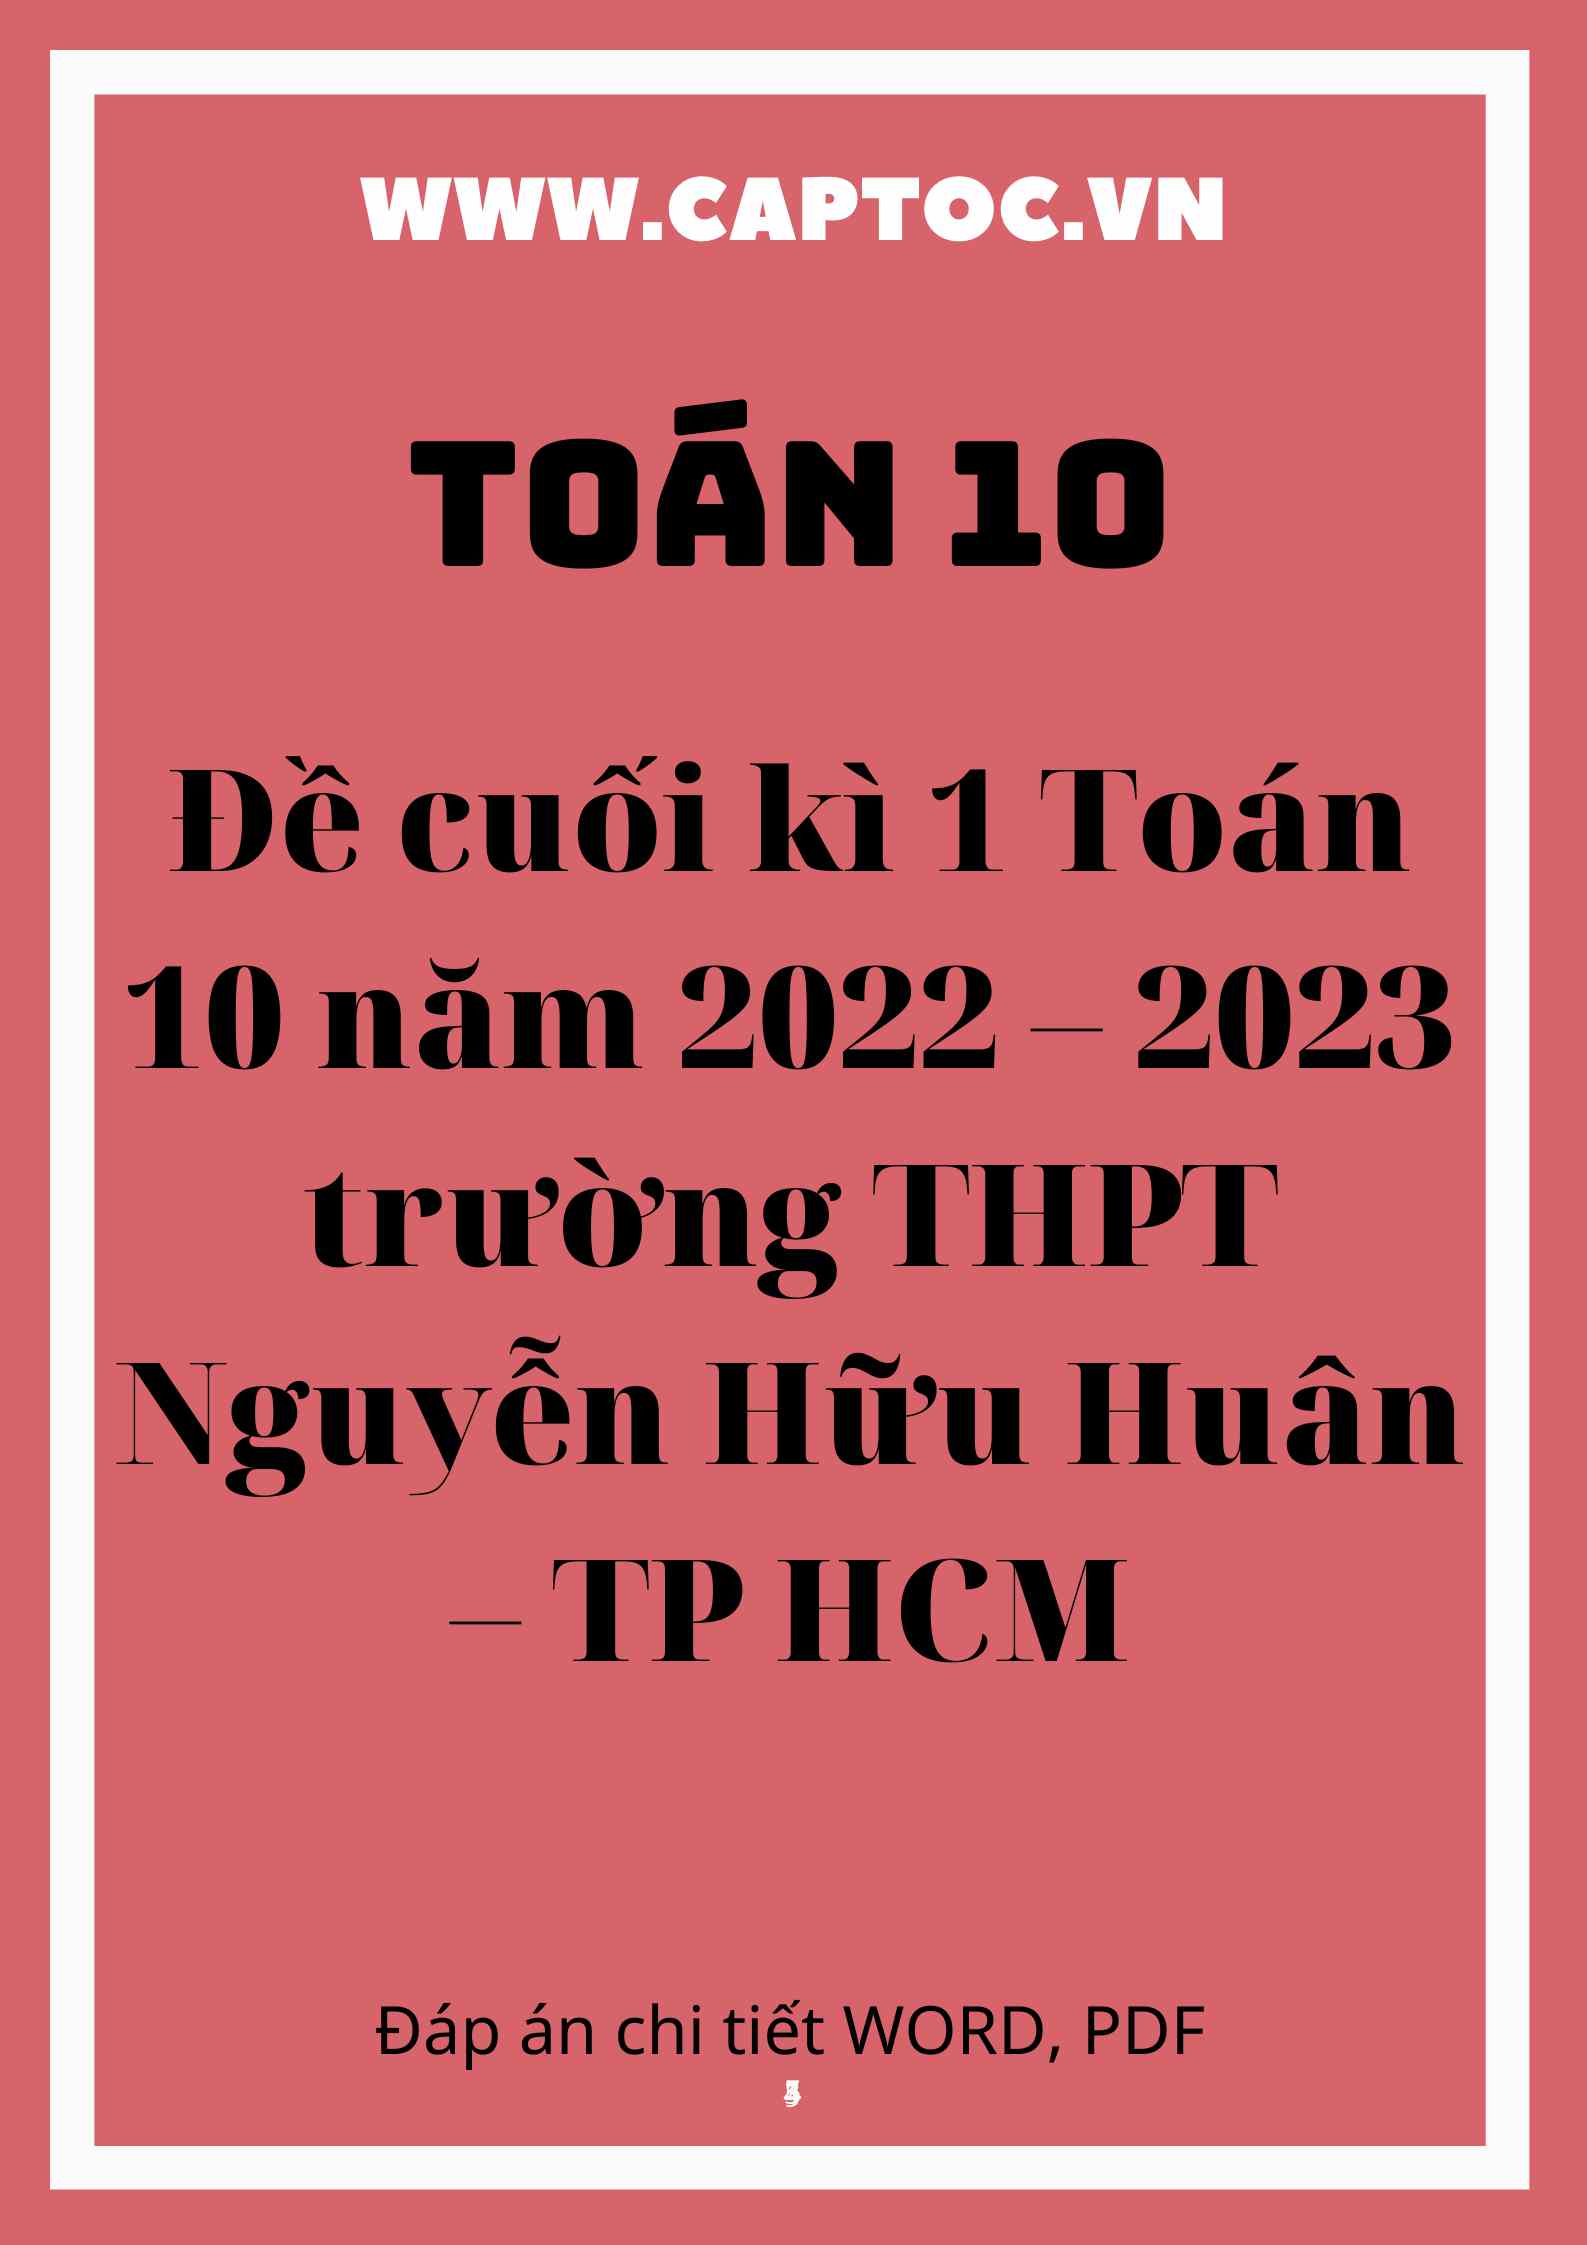 Đề cuối kì 1 Toán 10 năm 2022 – 2023 trường THPT Nguyễn Hữu Huân – TP HCM